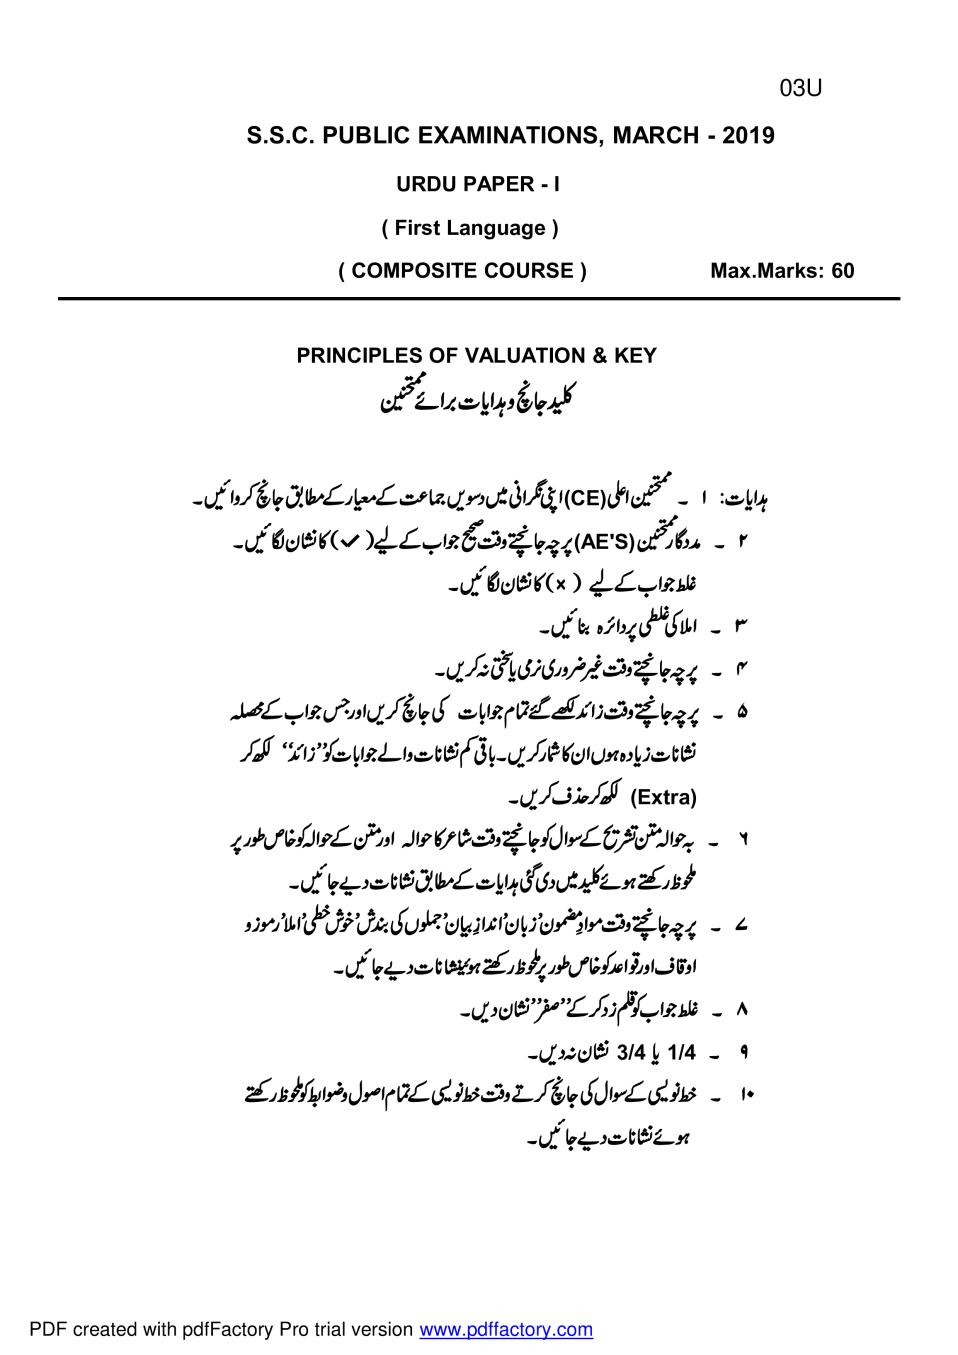 AP 10th Class Marking Scheme 2019 Urdu - Paper 1 (1st Language Composite) - Page 1